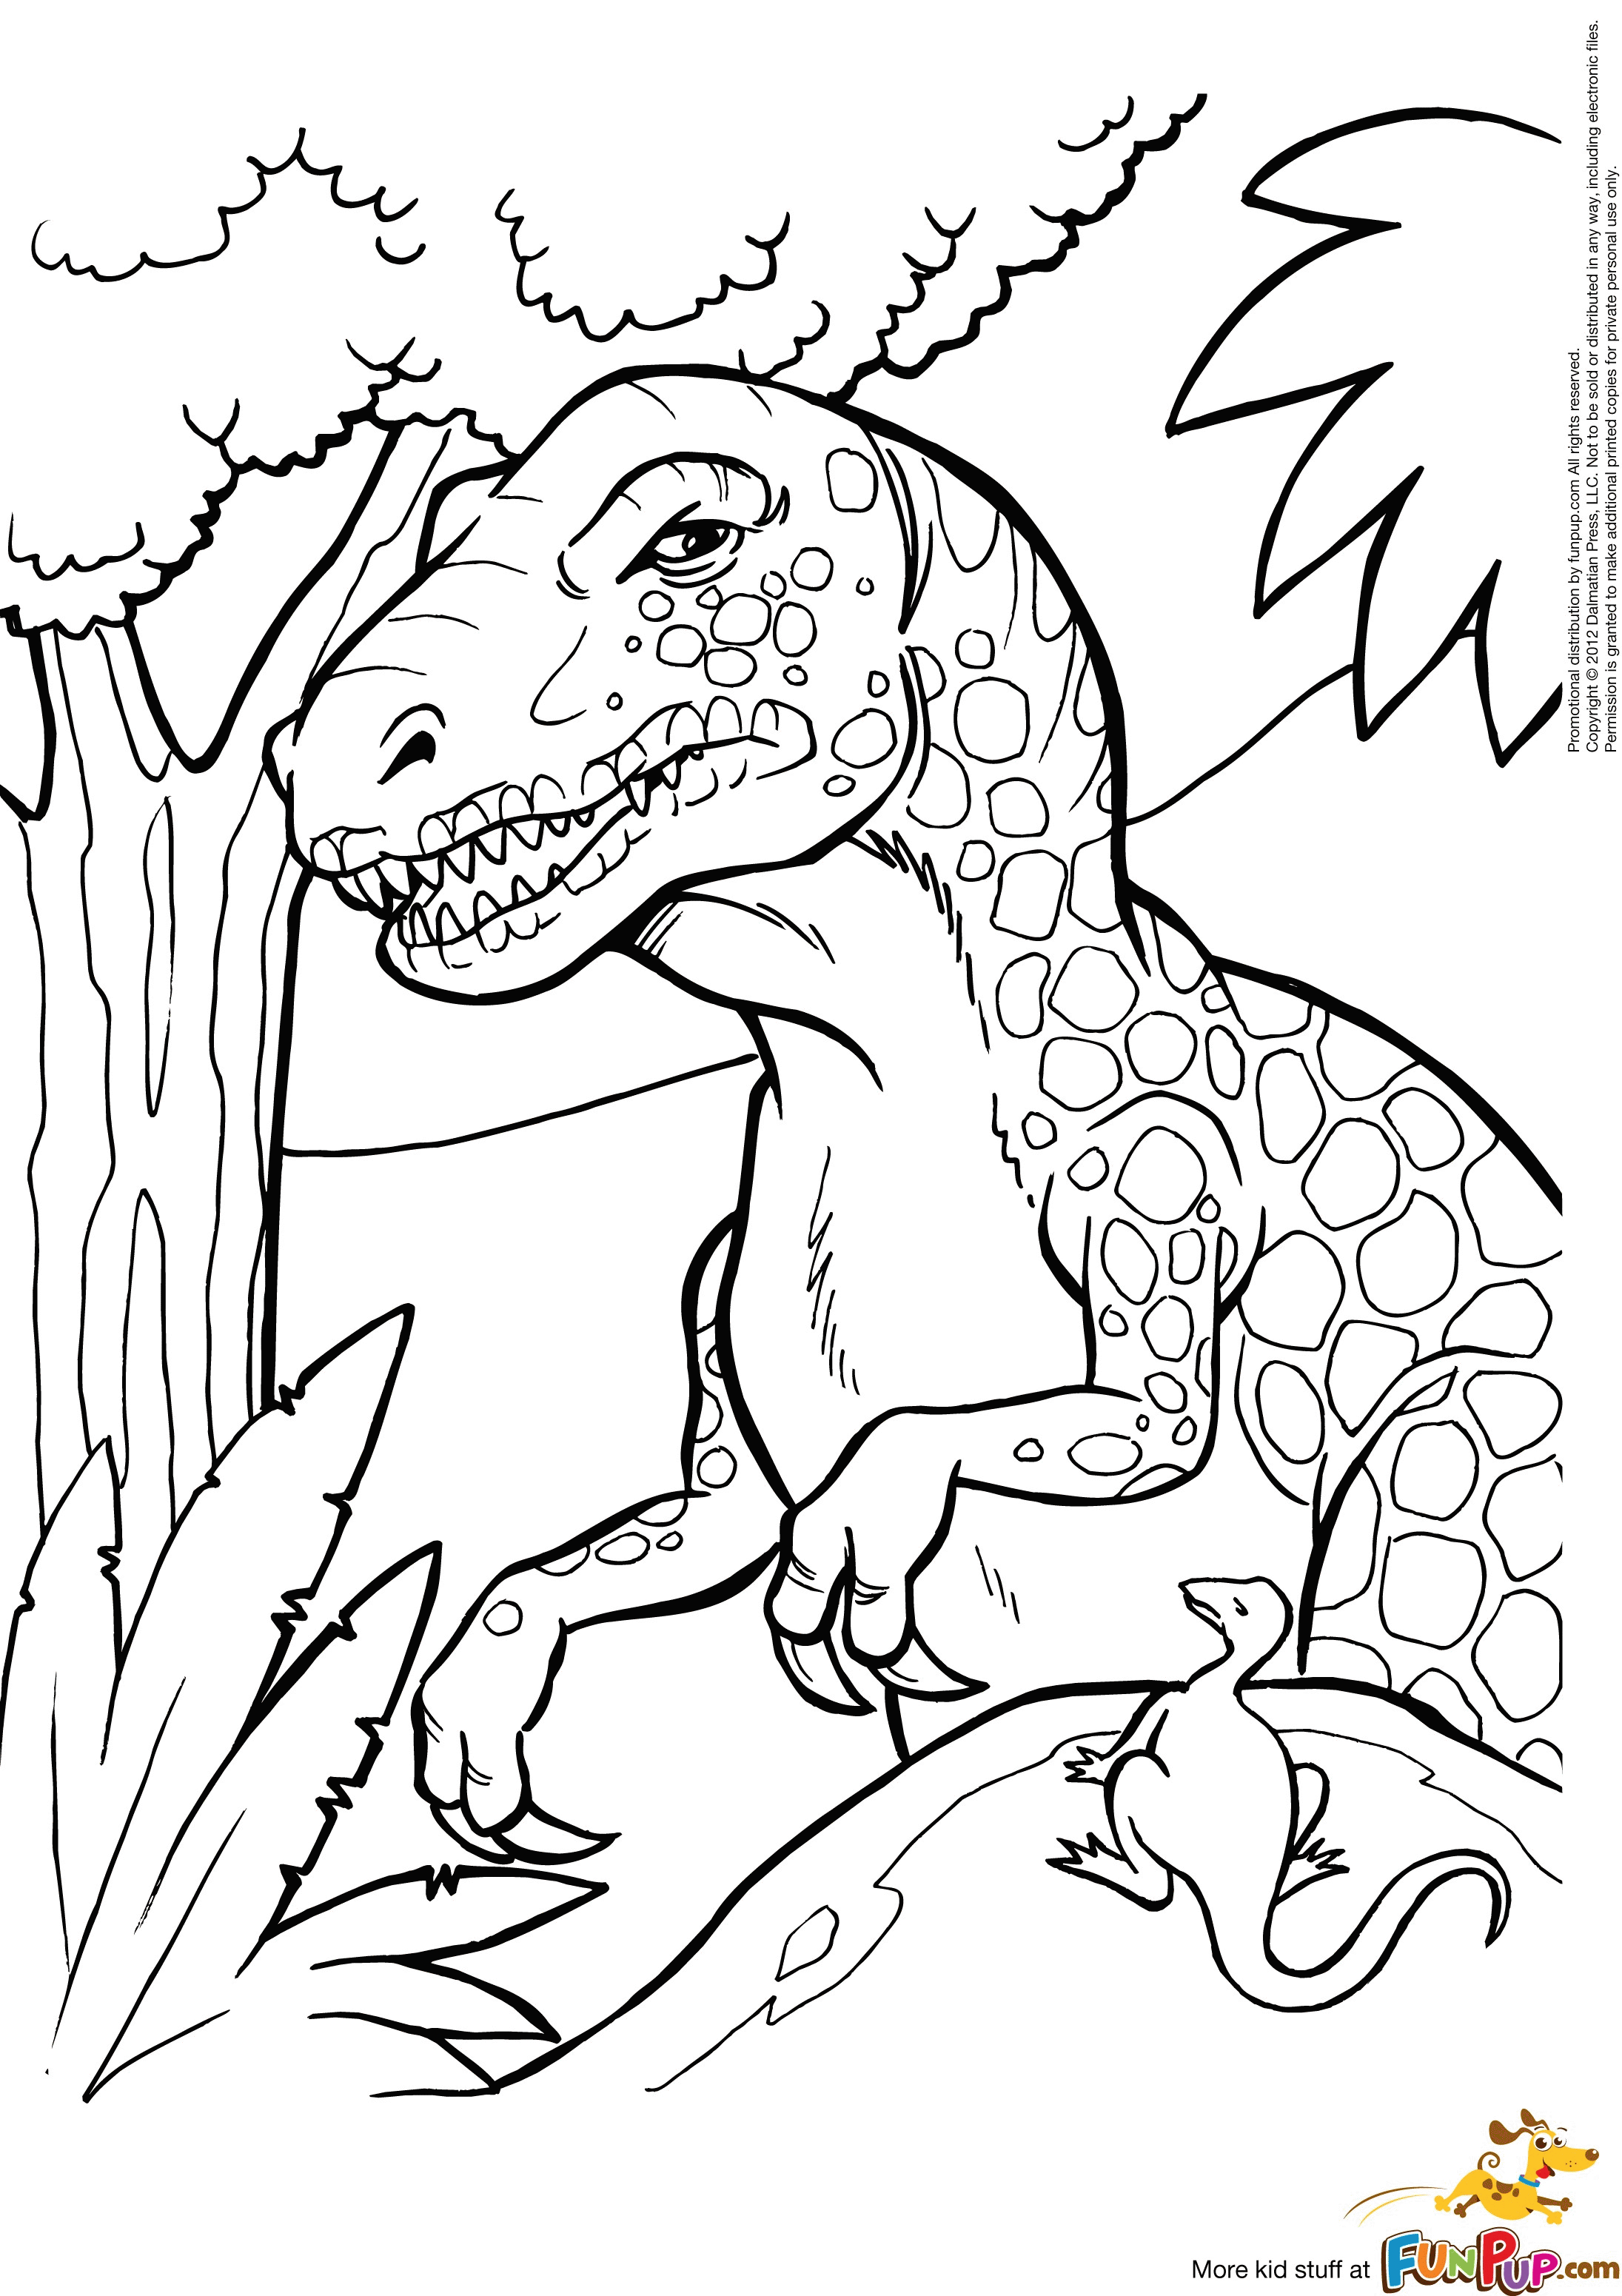 Динозавры для раскрашивания. Динозавры / раскраска. Динозавр раскраска для детей. Рисунок динозавра для раскрашивания. Раскраска "Динозаврики".